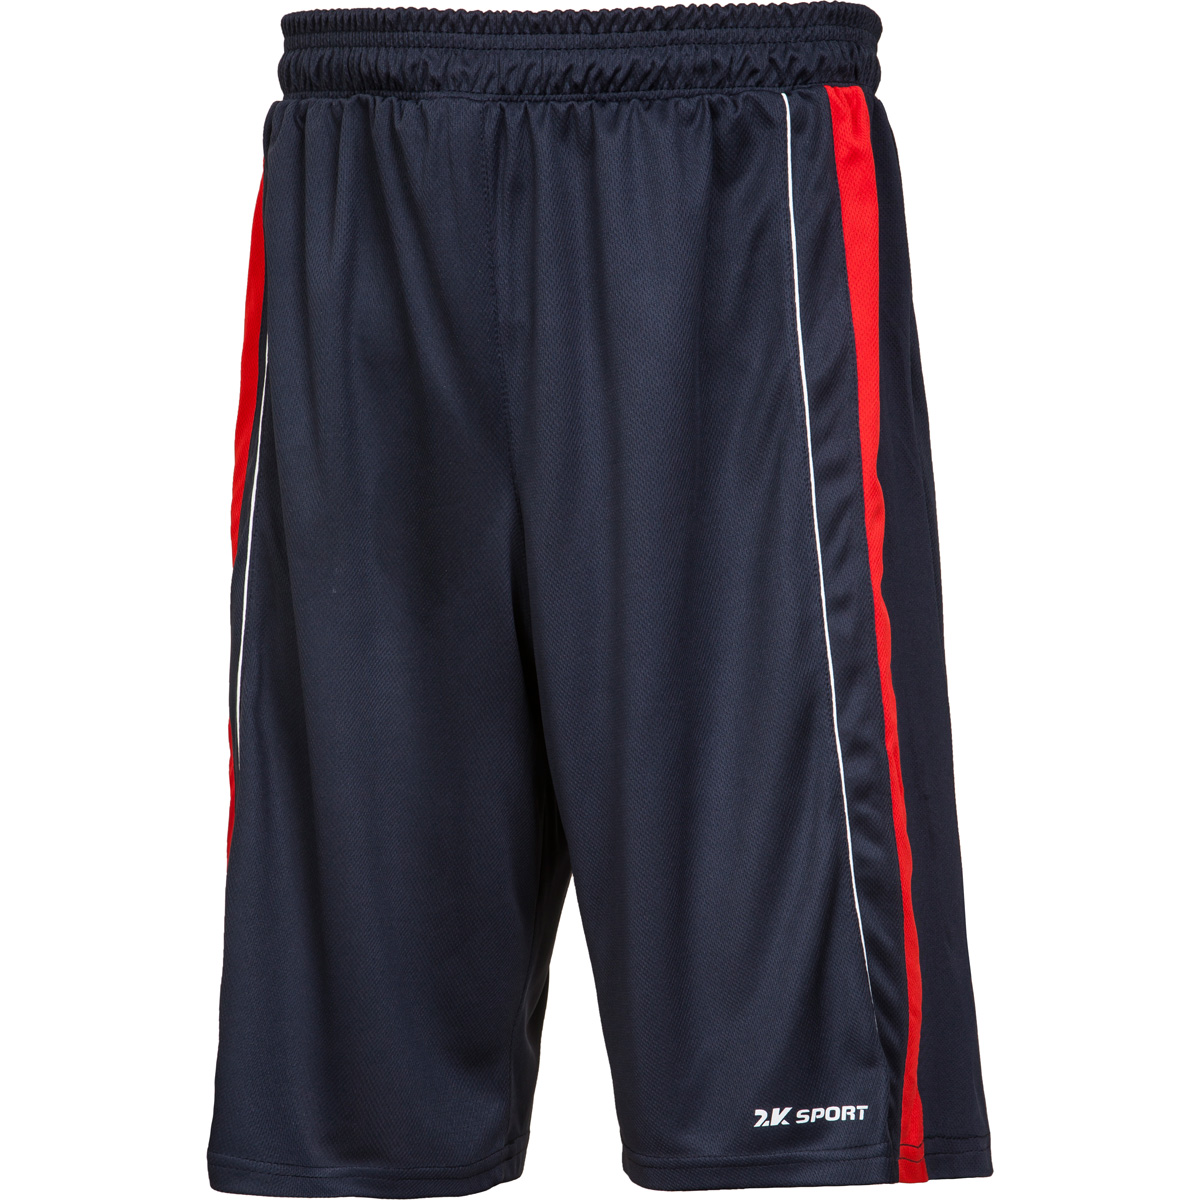 Шорты баскетбольные мужские 2K Sport Advance, цвет: темно-синий, красный, белый. 130031. Размер XS (44)